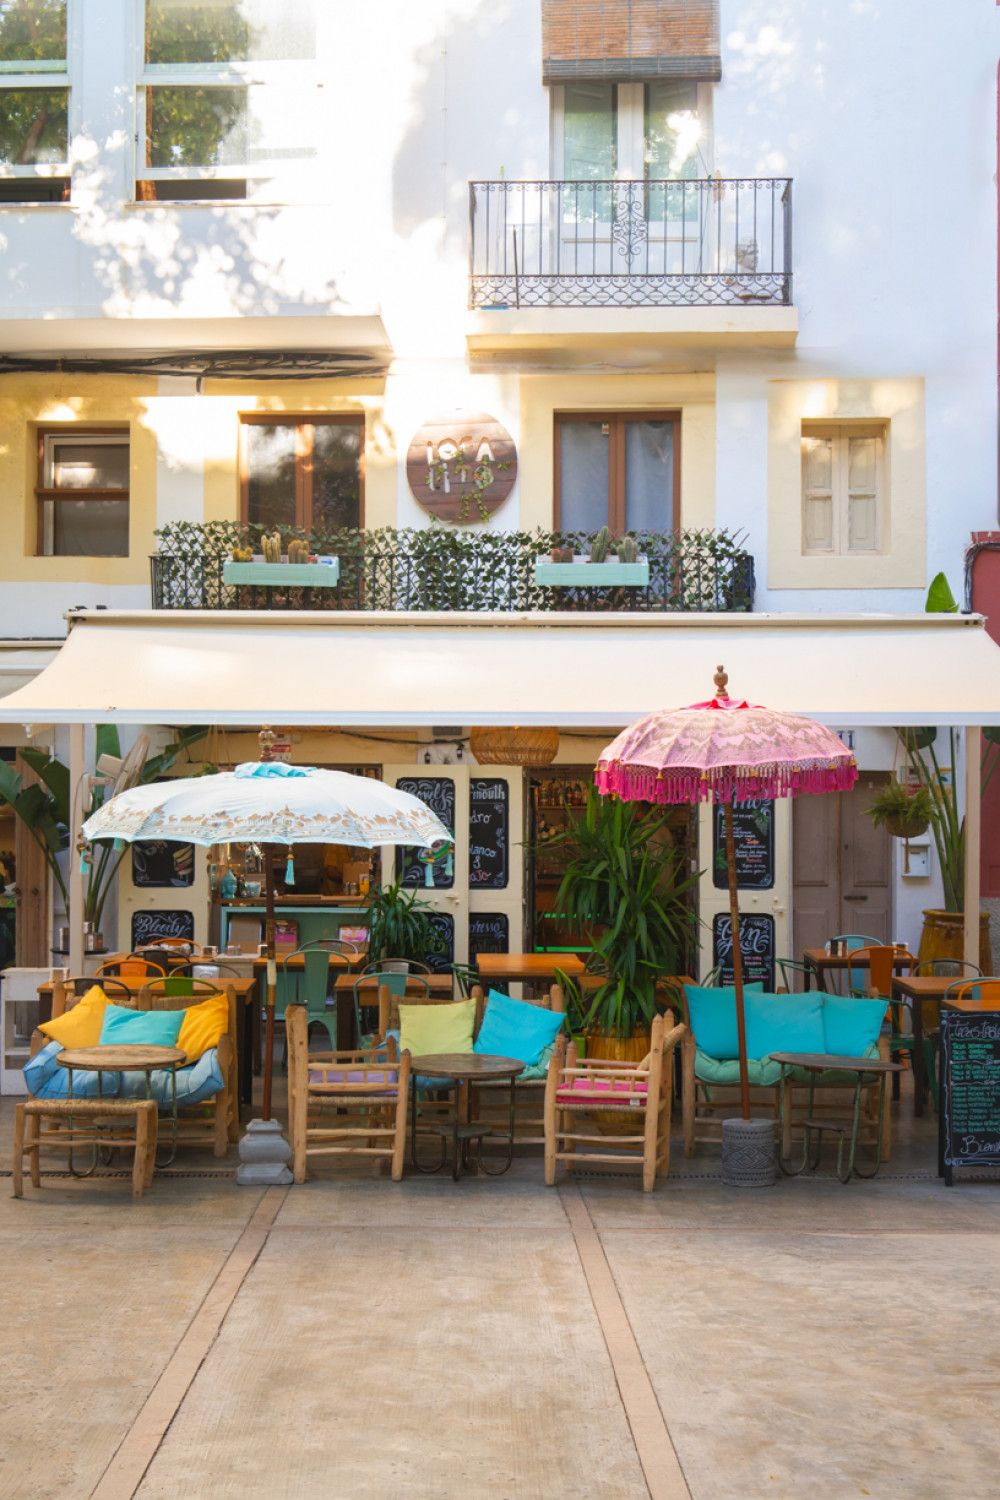 Opportunité d'investissement dans la vieille ville d'Ibiza